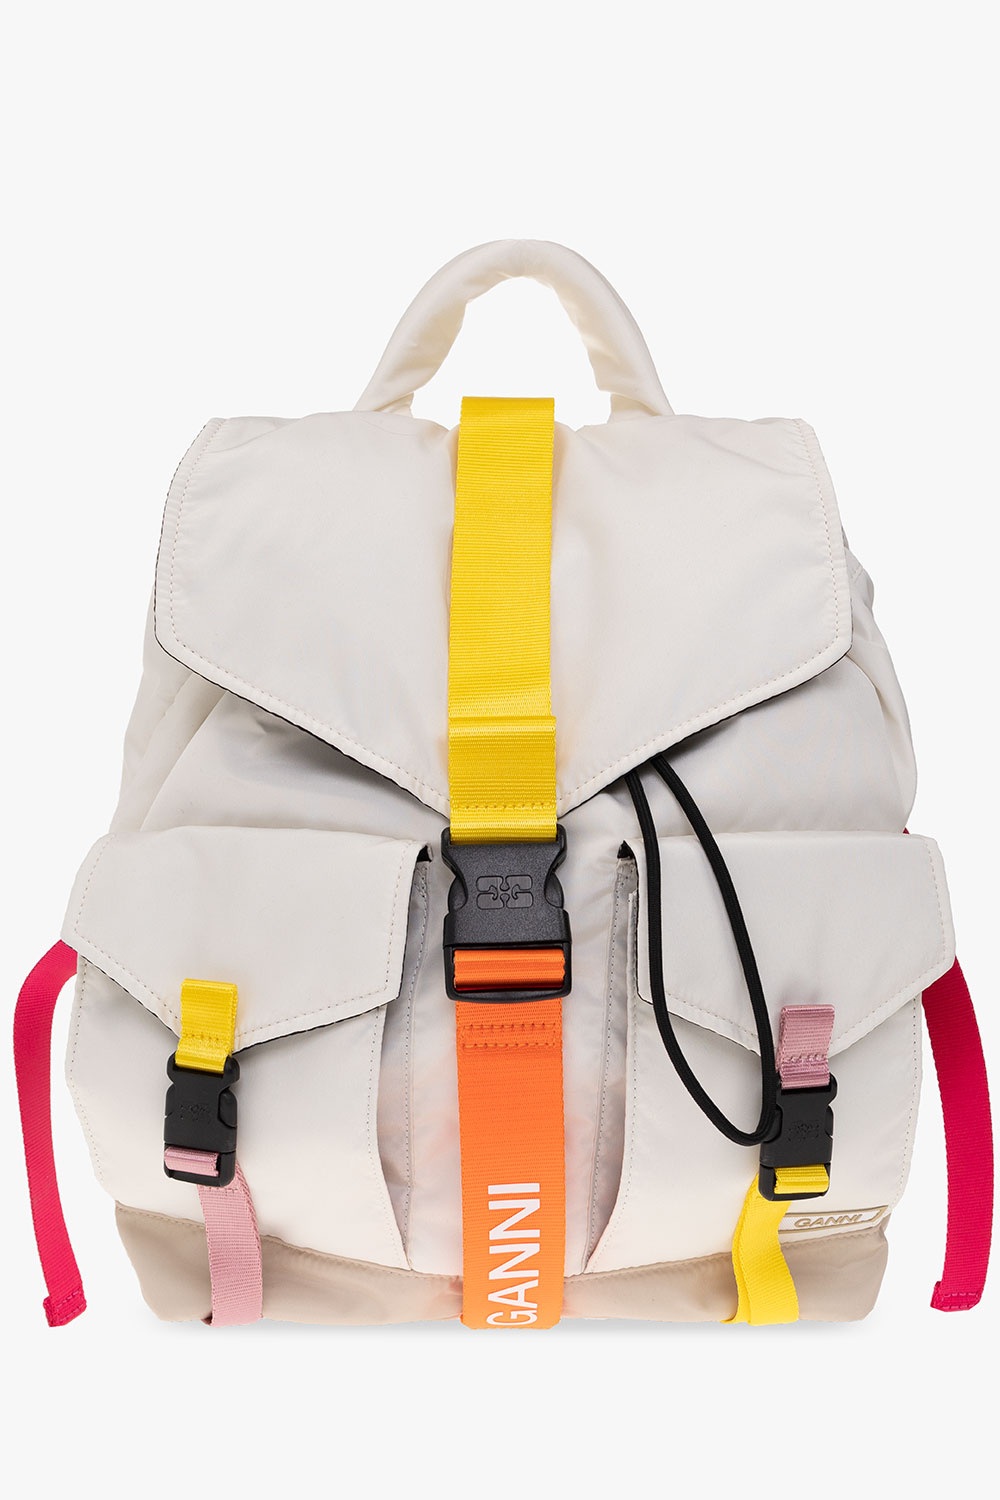 Louis Vuitton Campus Backpack - Vitkac shop online